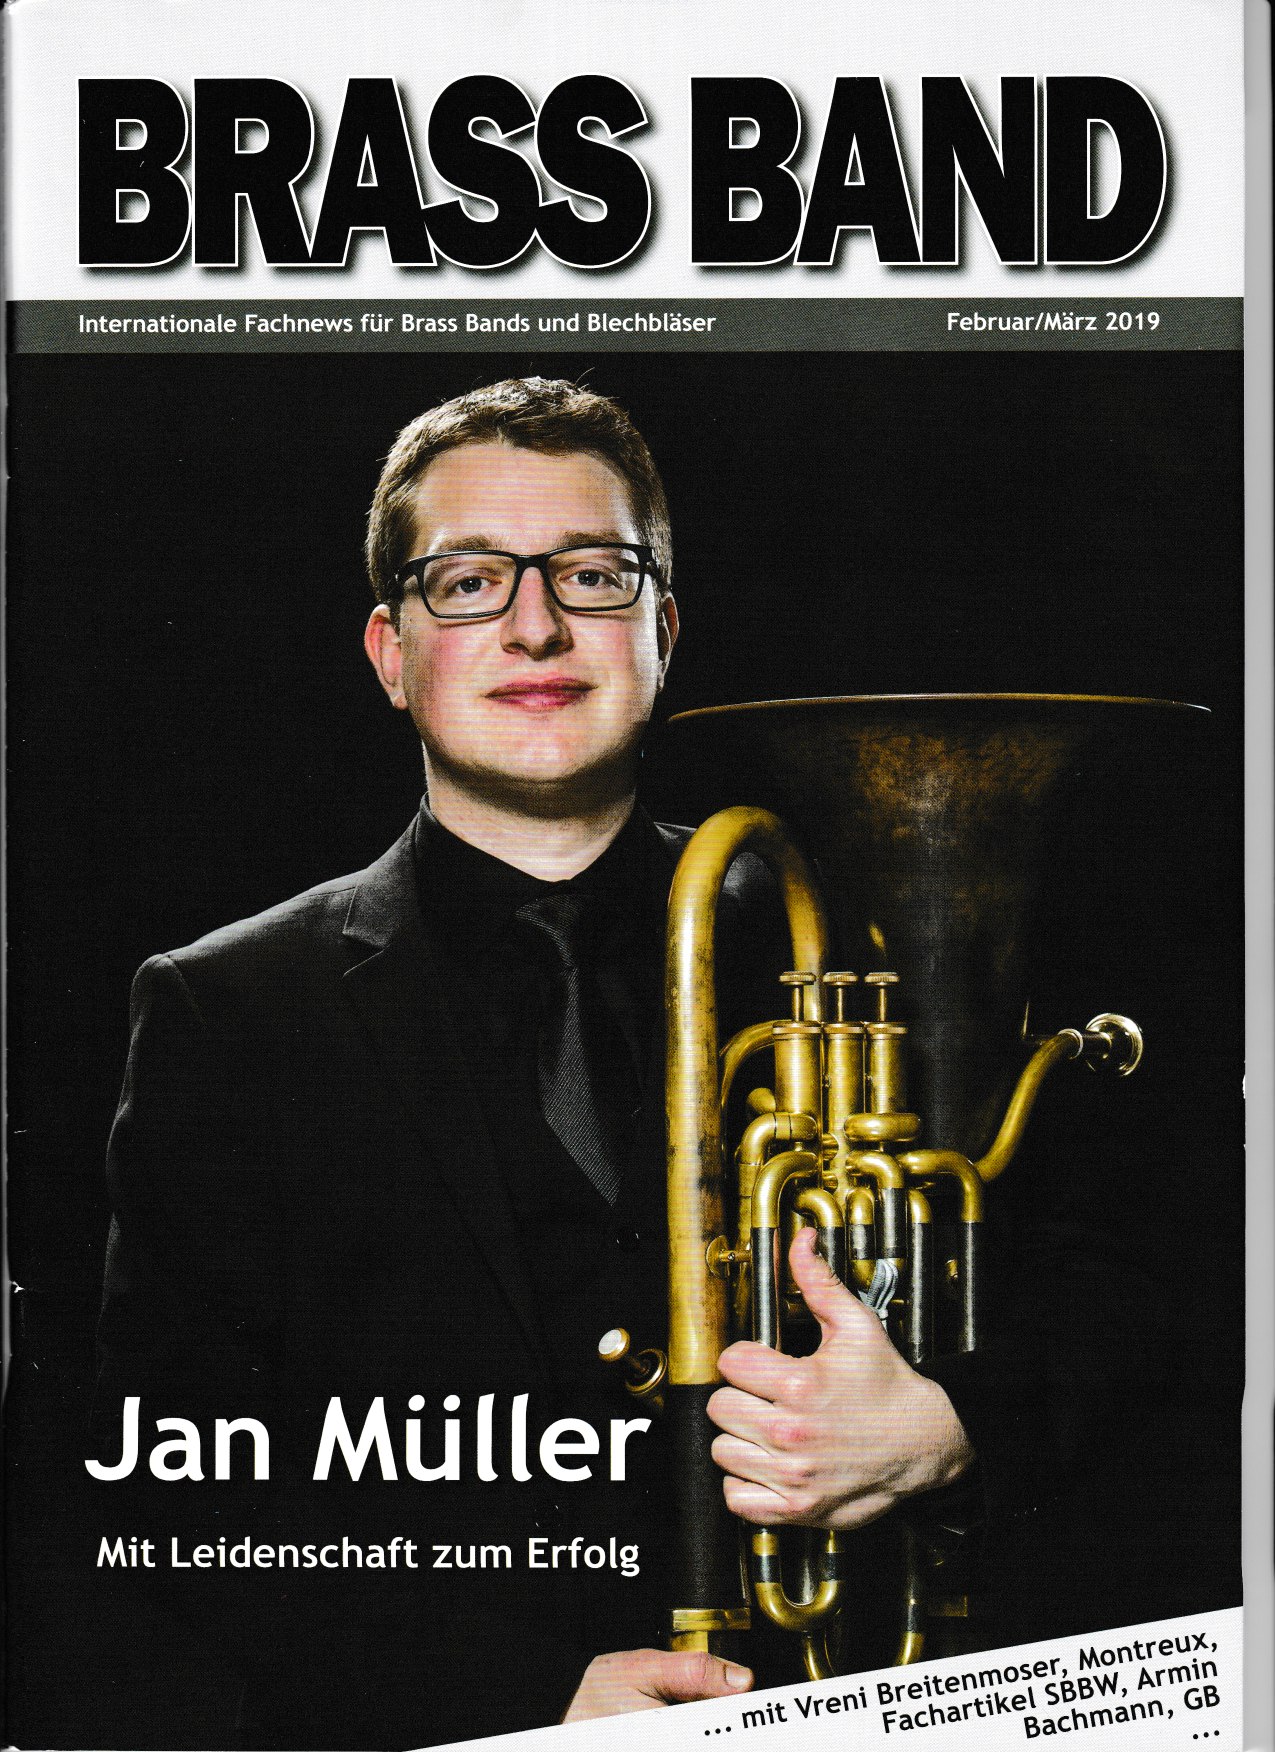 Artikel im Fachmagazin "Brass Band" über unsere Jugend Brass Band BlechKLANG